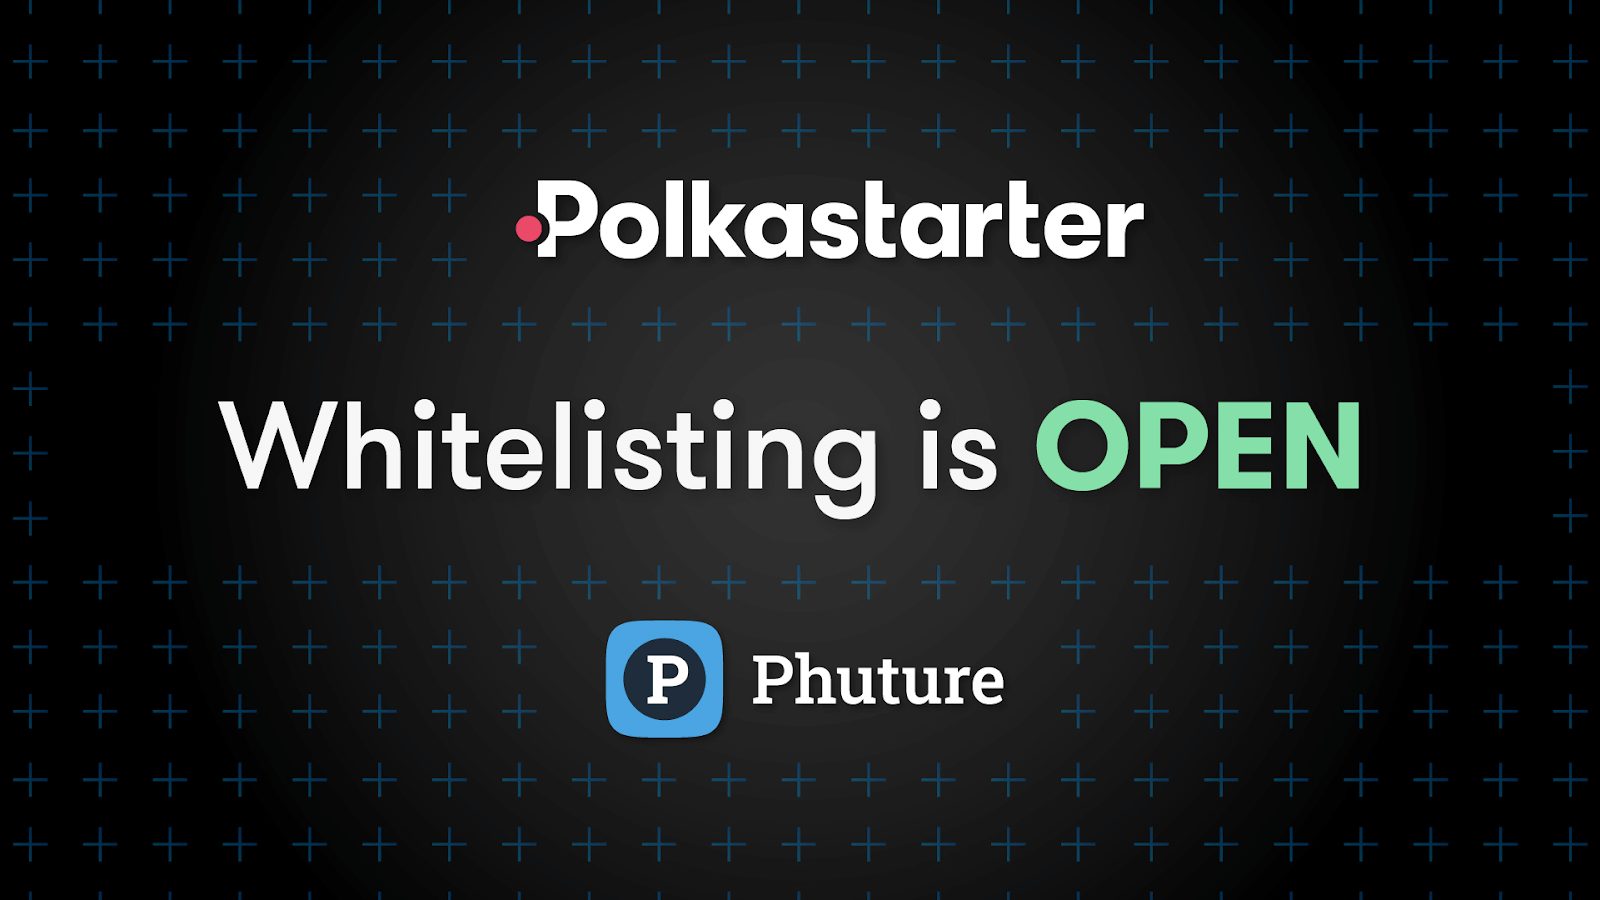 Phuture Whitelist Is On Polkastarter - Smart Liquidity Network